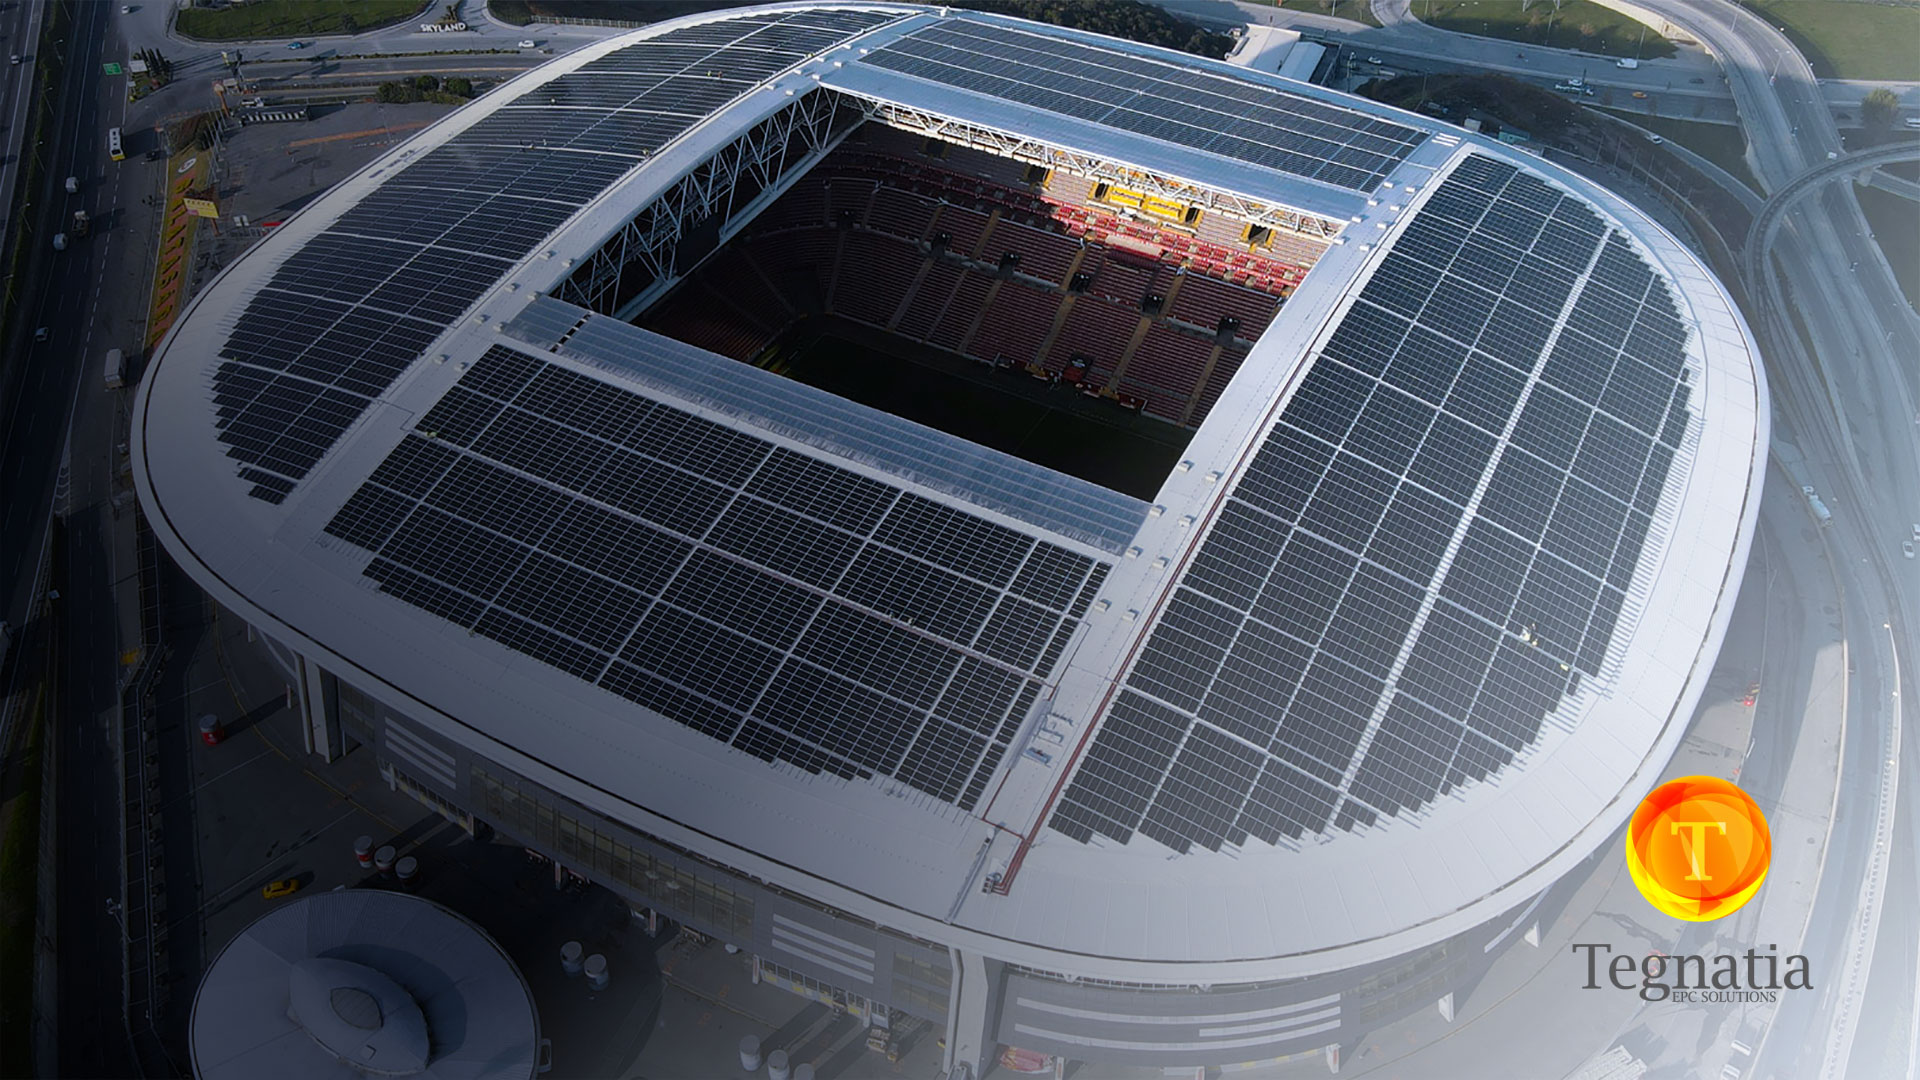 Tegnatia’nın Galatasaray Stadyumu GES Projesi Euronews'de haber oldu.